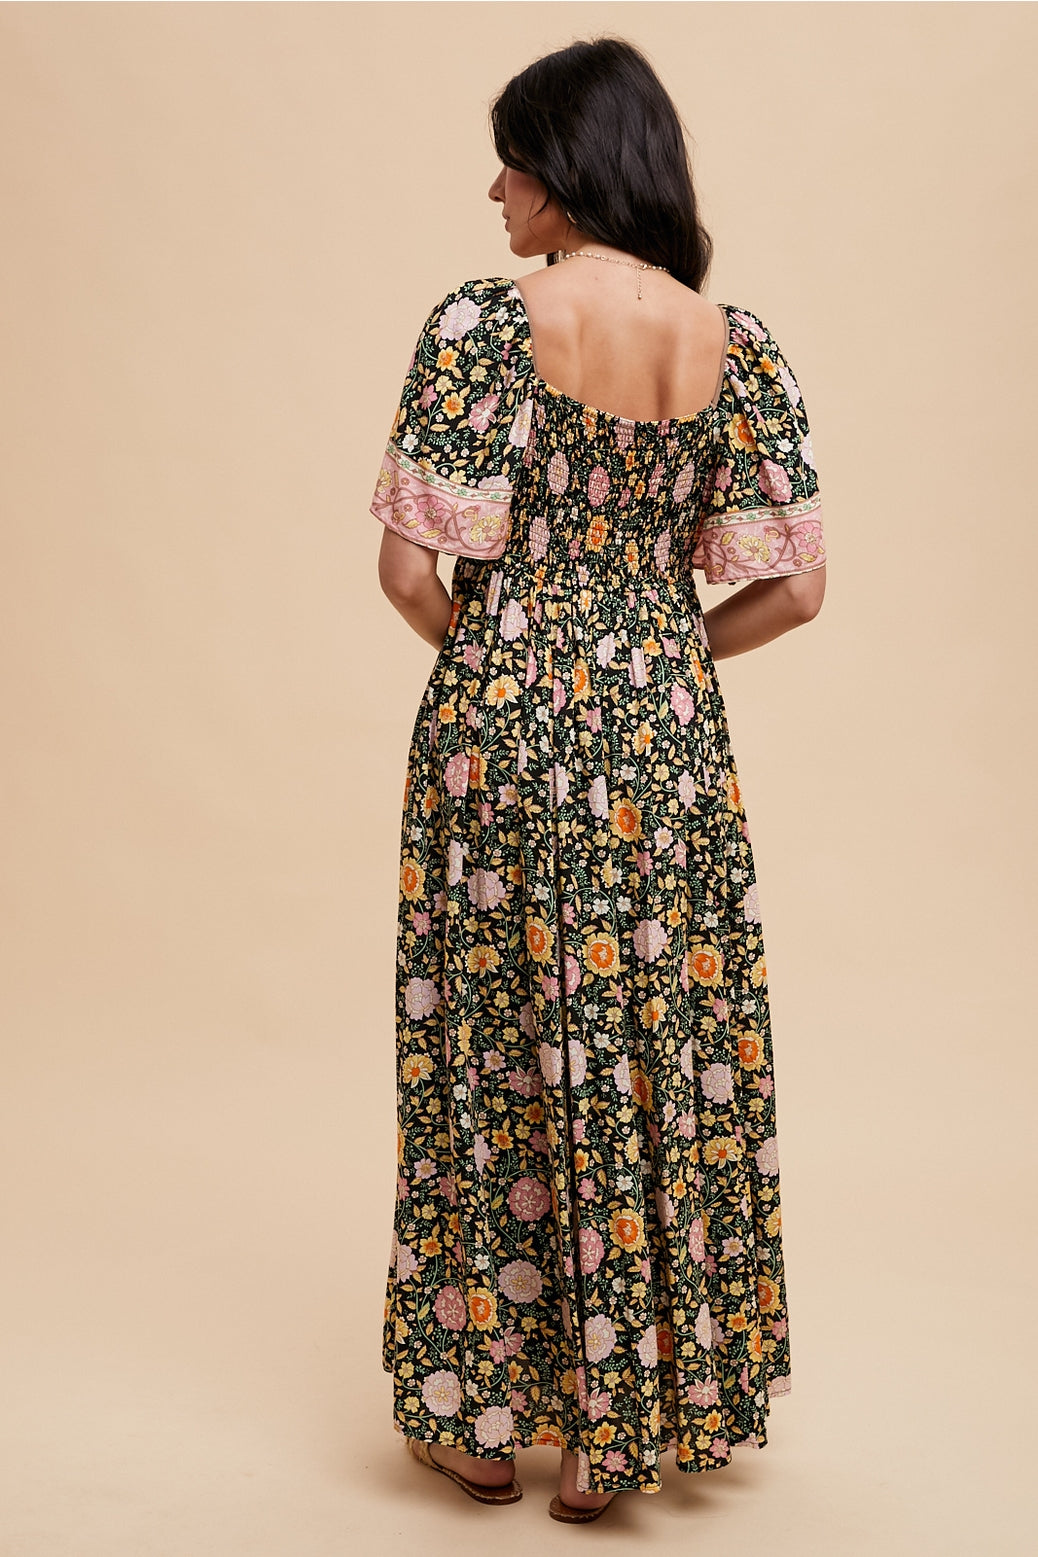 Midnight Floral Flutter Sleeve Maxi Dress (Final Sale)